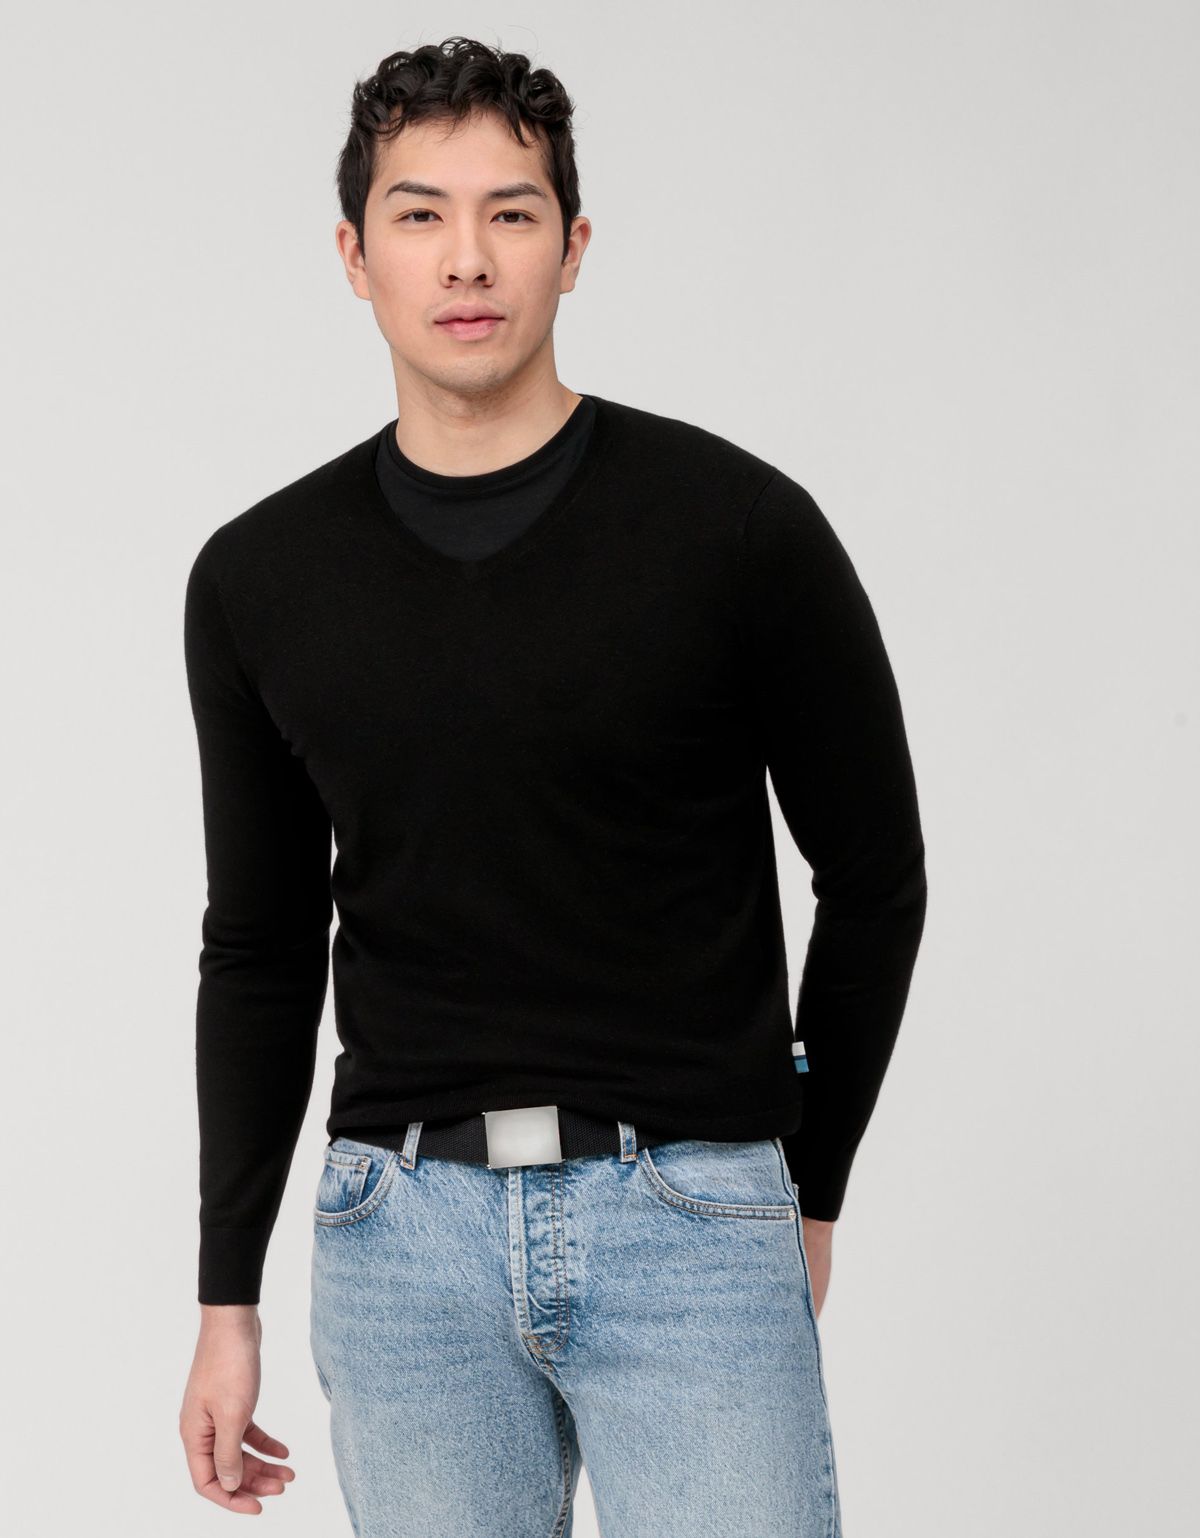 Пуловер черный мужской OLYMP, body fit[ЧЕРНЫЙ]